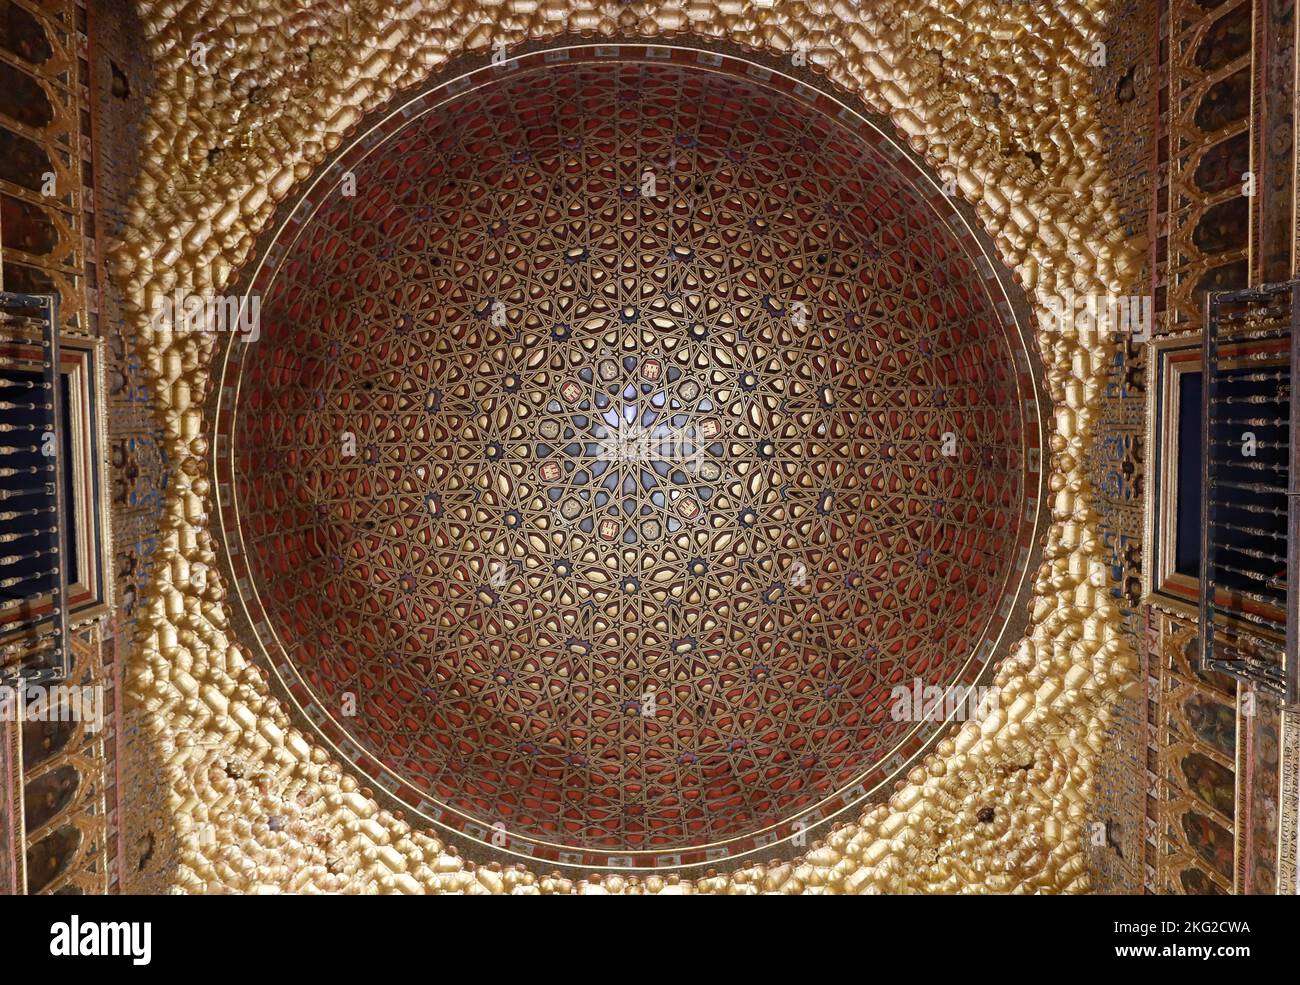 Die königlichen Alcazaren von Sevilla. Architektur. Spanien. Stockfoto